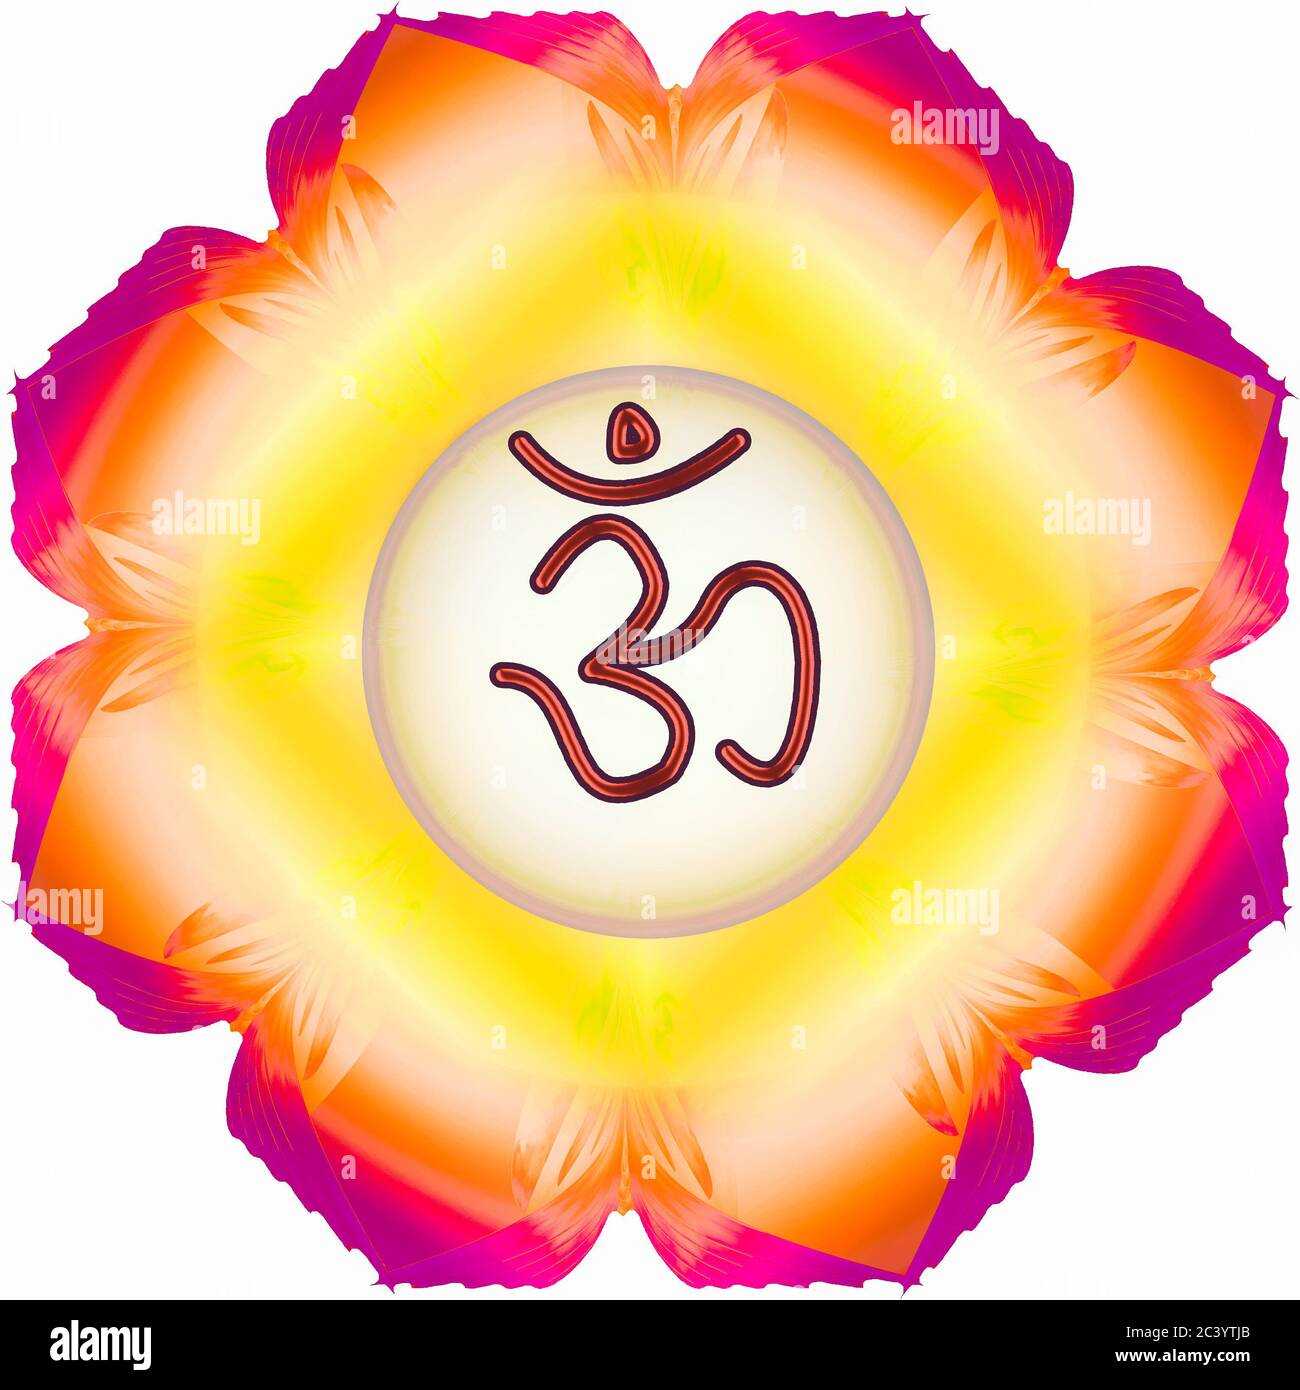 fond coloré et symbole de religion hindoue om mot Banque D'Images